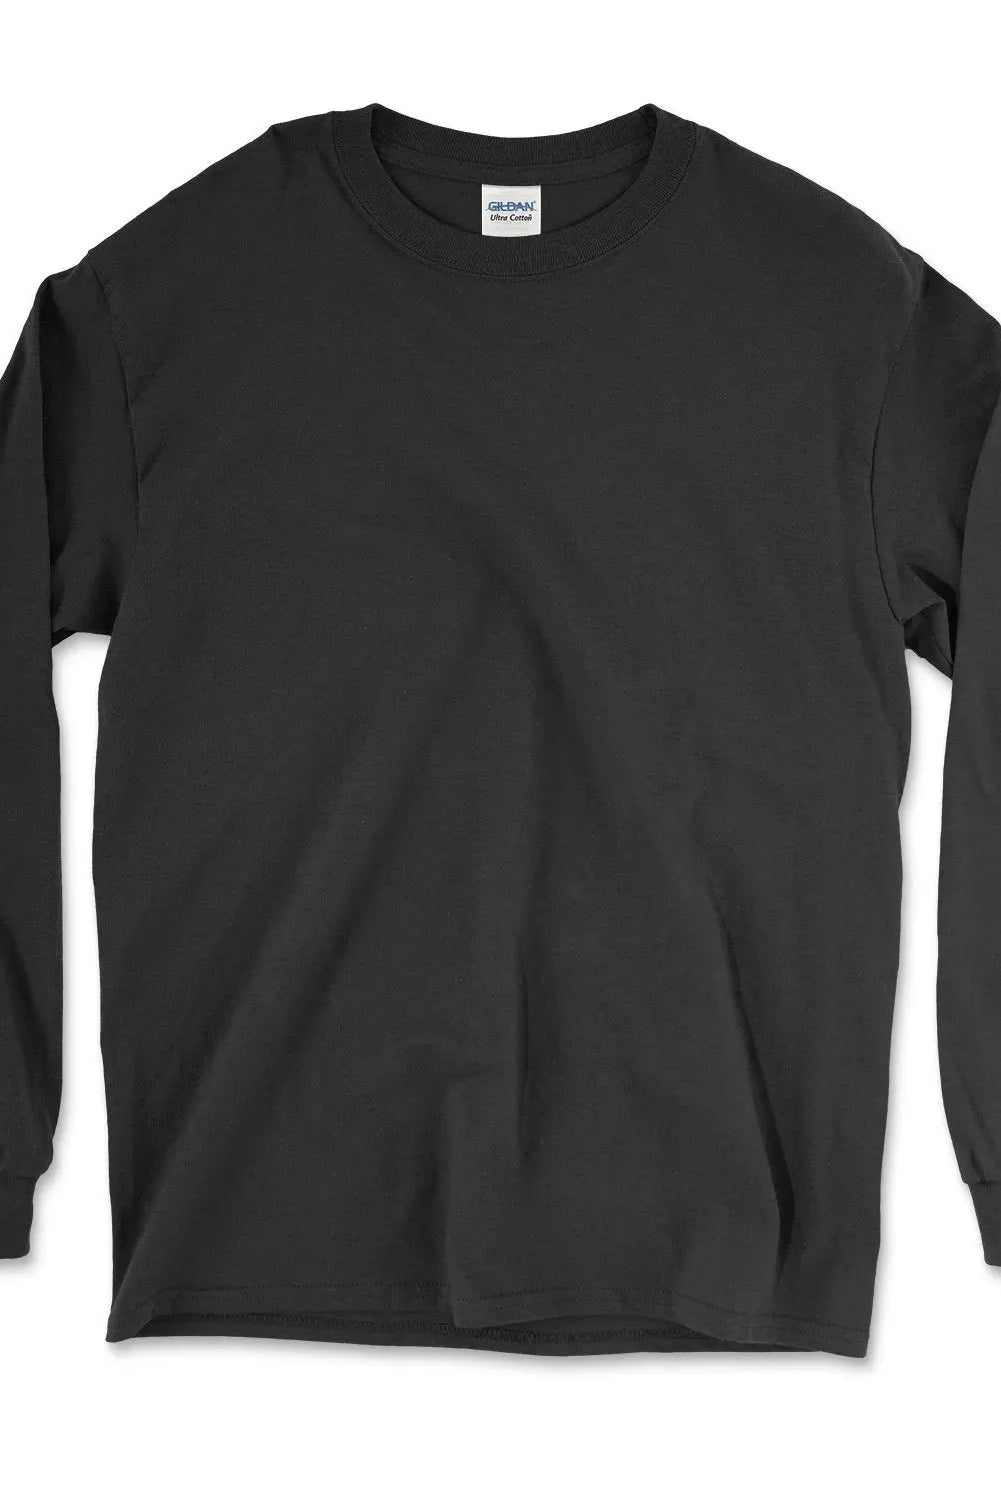 Ultra Cotton® Long Sleeve T-Shirt - 2400 - Print Me Shirts